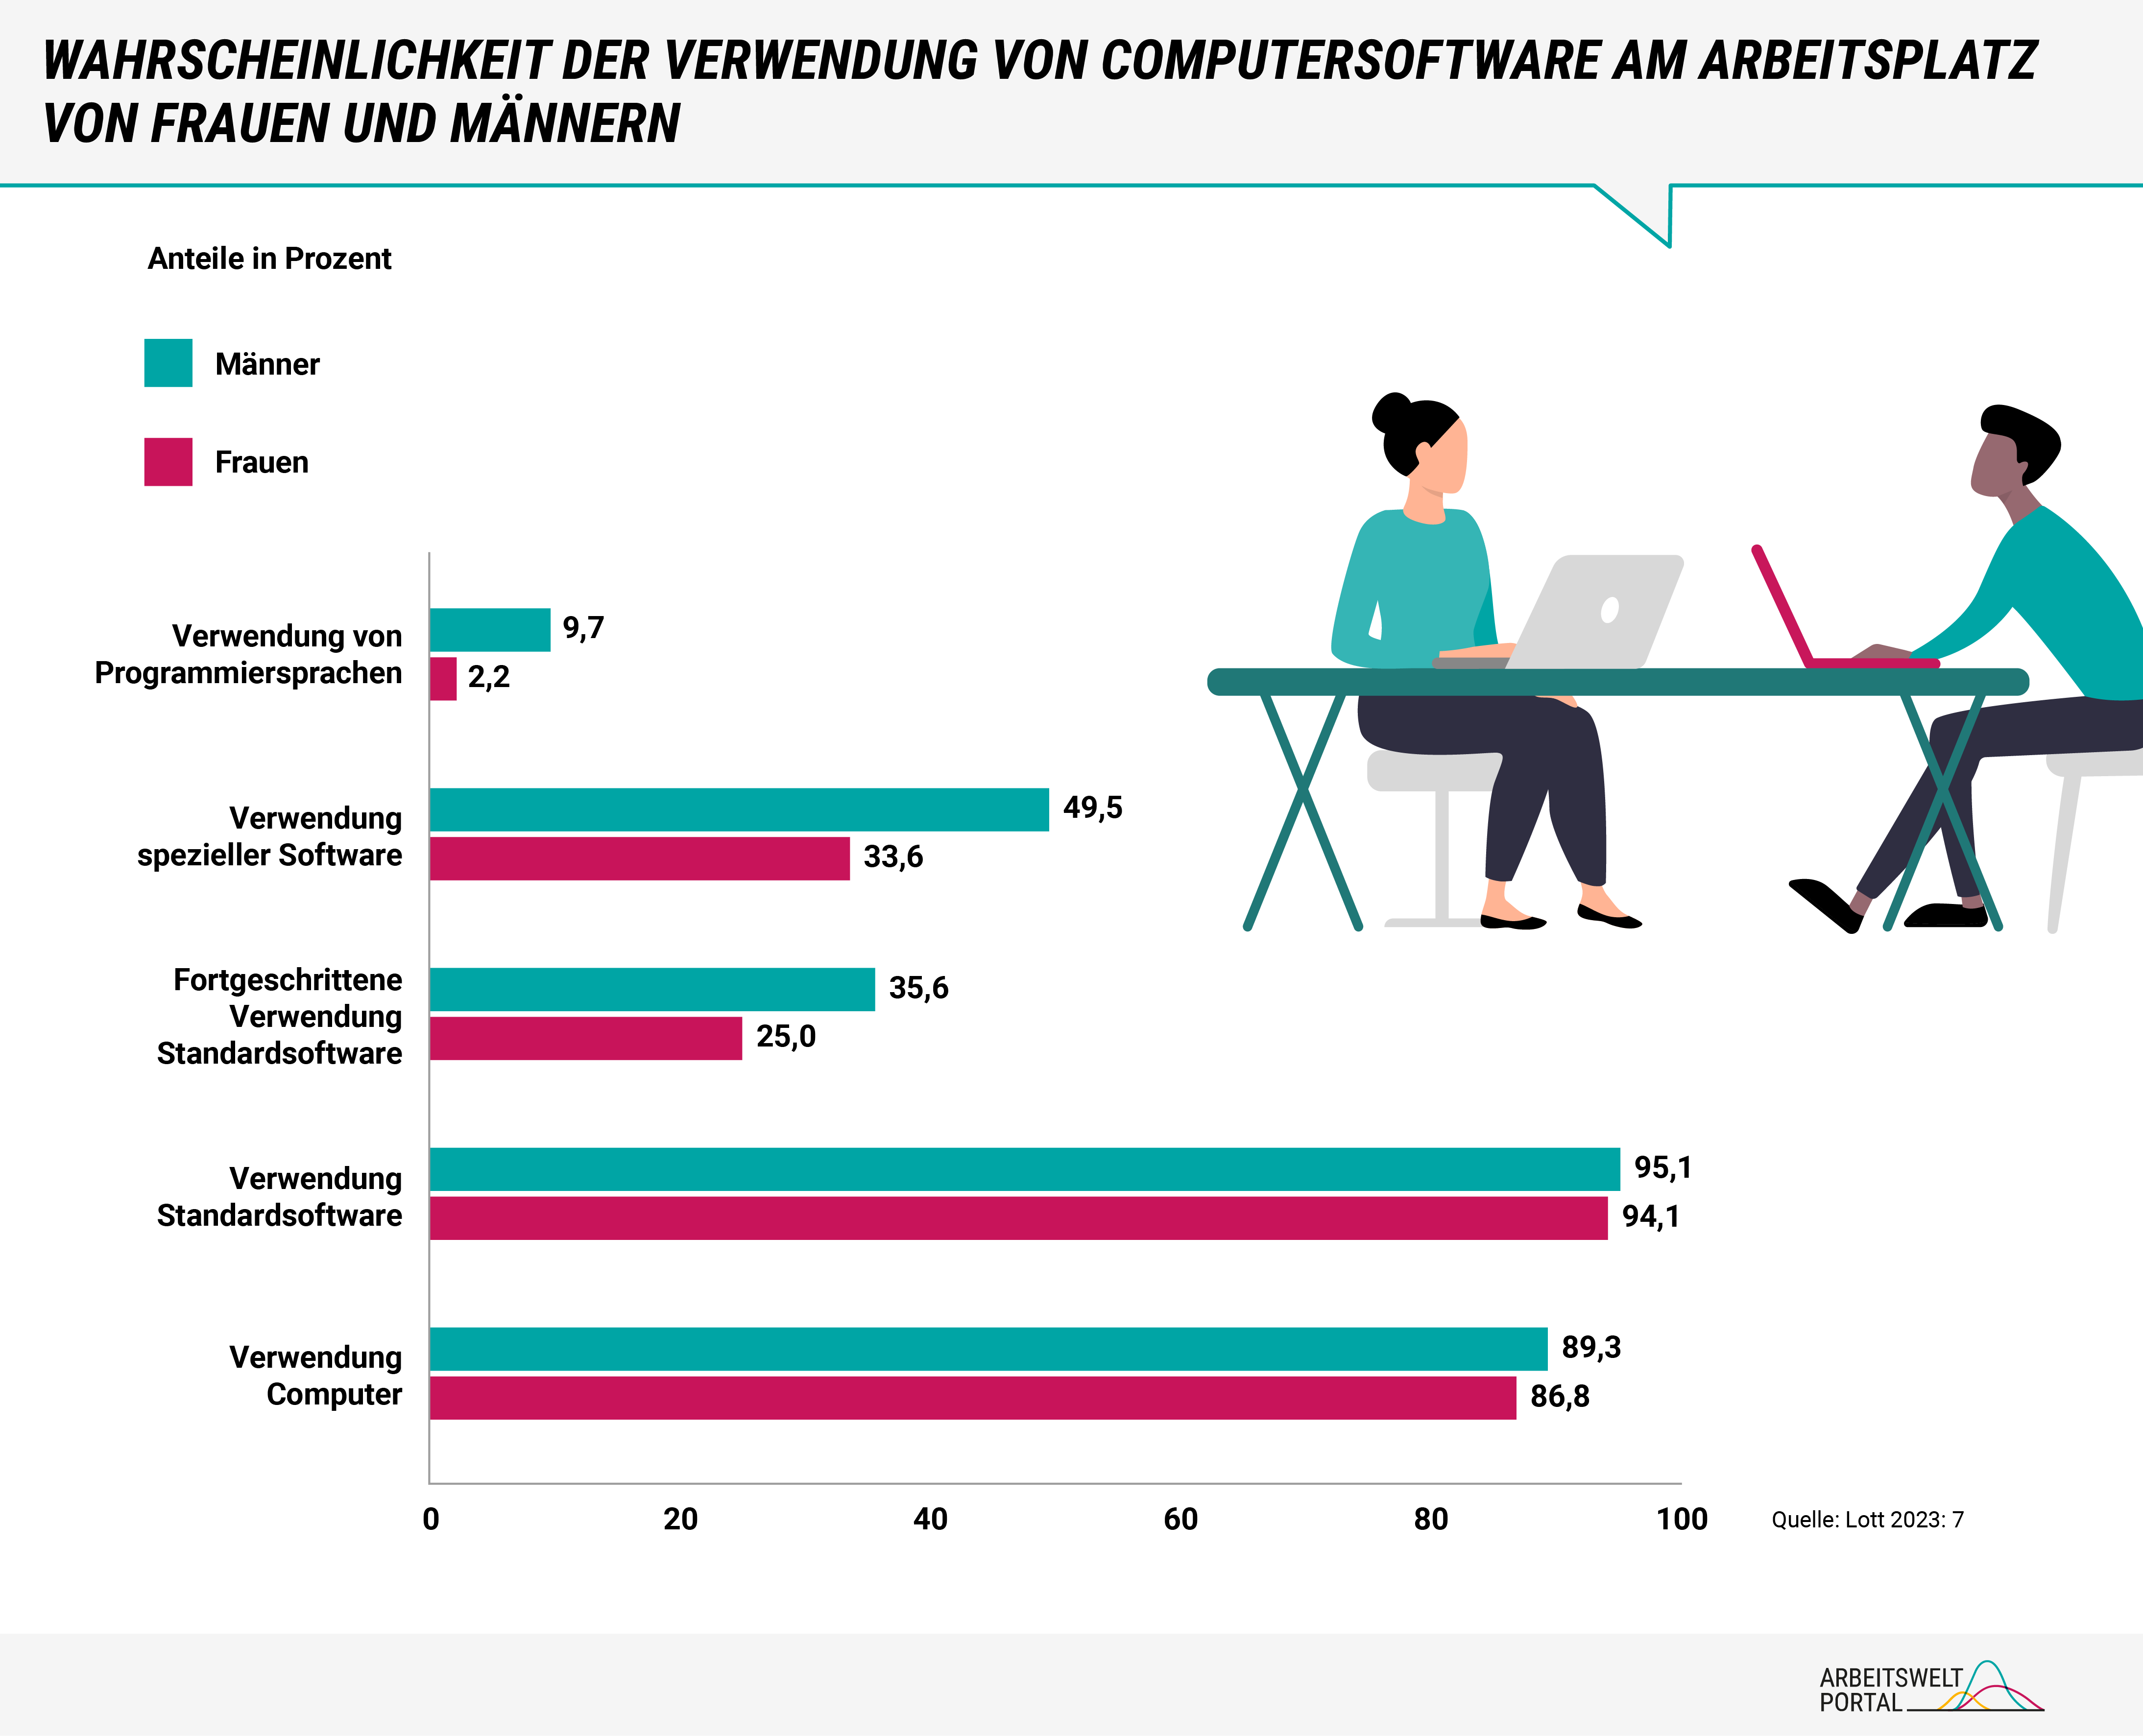 Die Grafik zeigt an, wie wahrscheinlich die Nutzung von Computersoftware am Arbeitsplatz von Frauen und Männern ist. Die Anteile werden in Prozent dargestellt. Die Daten basieren auf Analysen des Wirtschafts- und Sozialwissenschaftlichen Instituts der Hans-Böckler-Stiftung.  